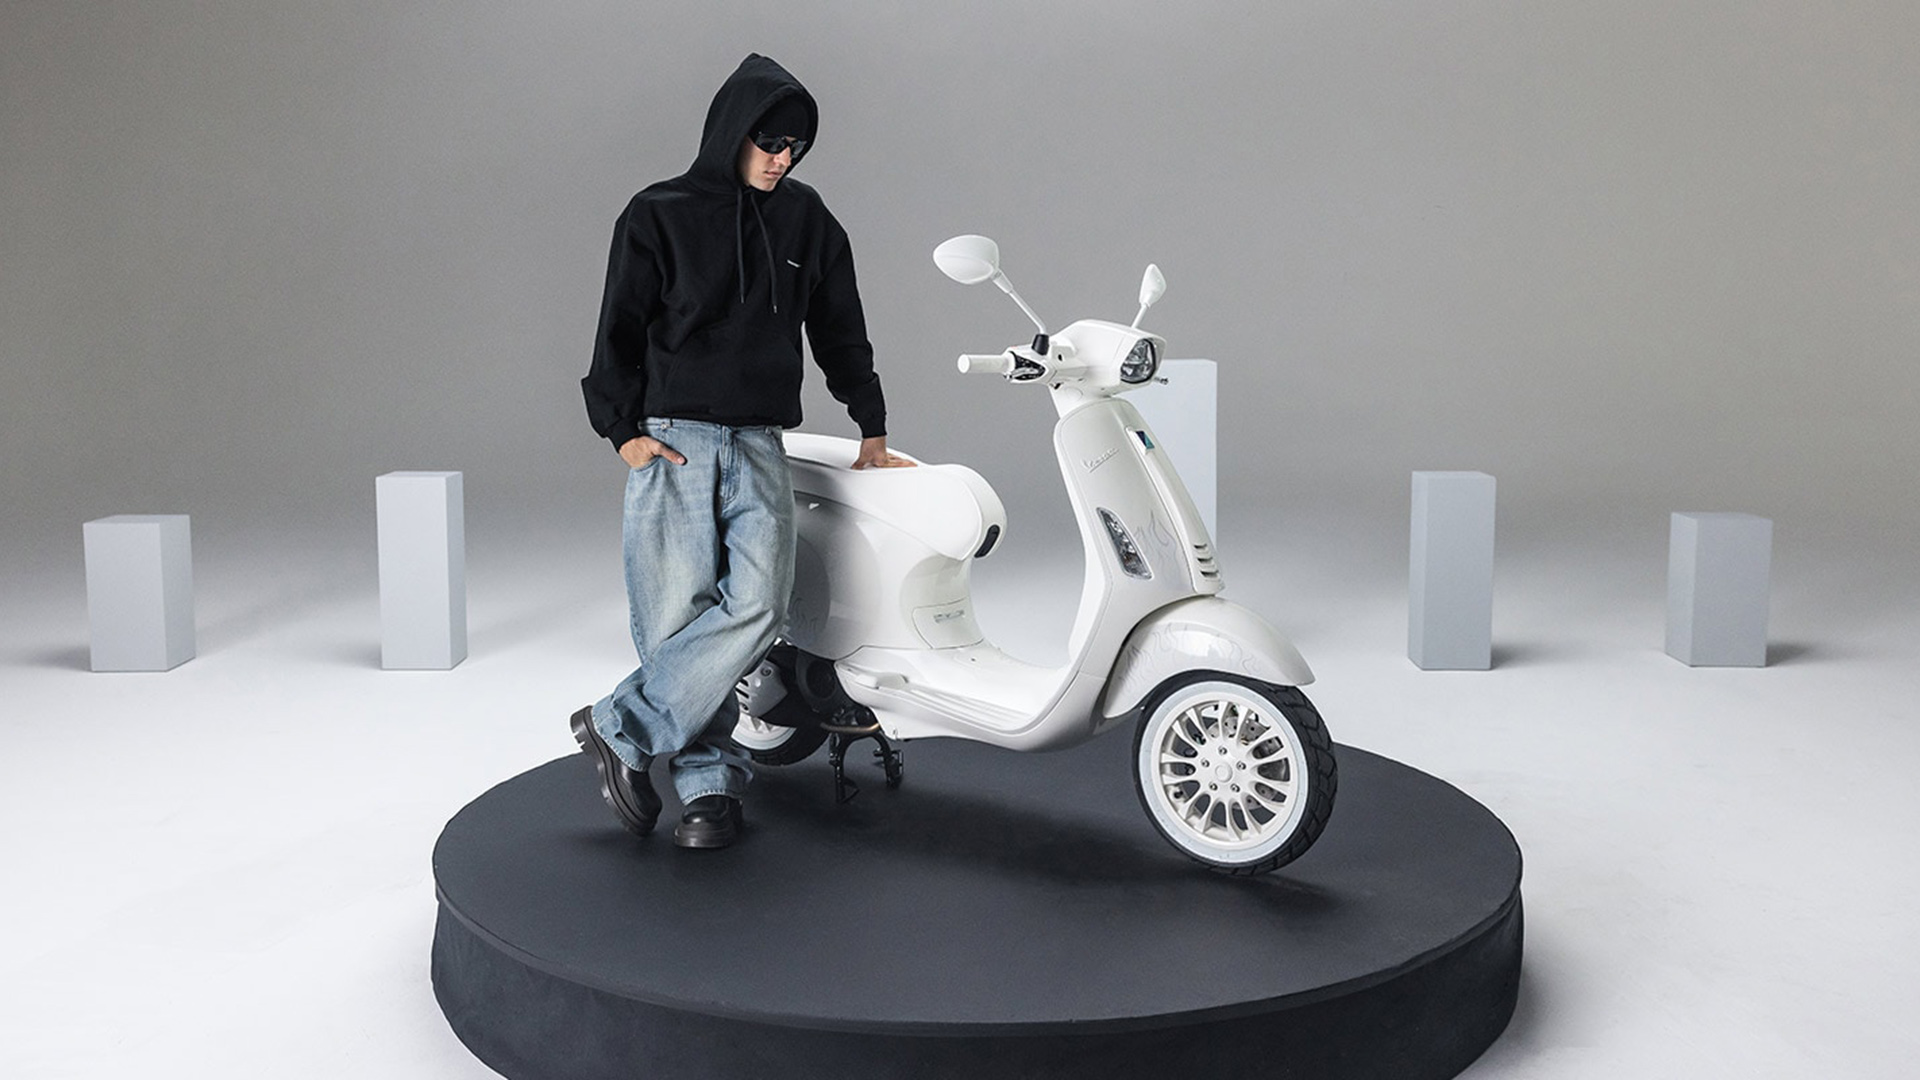 La moto, mayormente blanca, es uno de los vehículos favoritos del músico pop